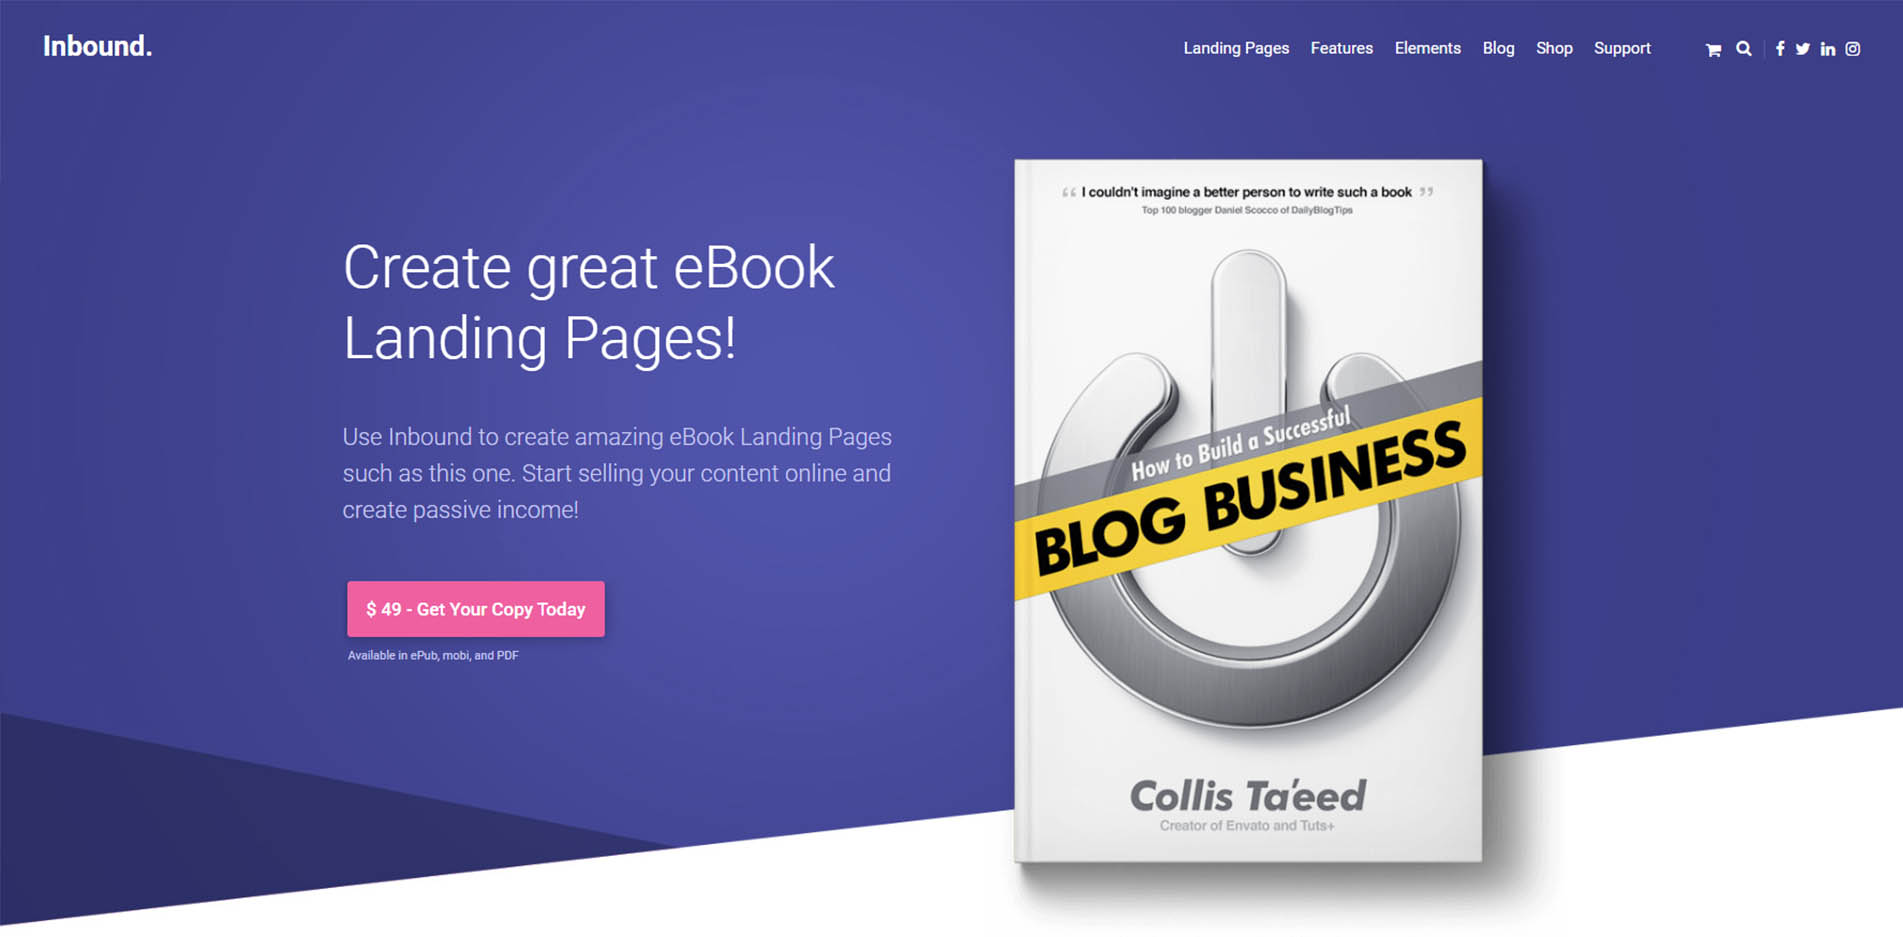 Book Launch Website Design Inbound